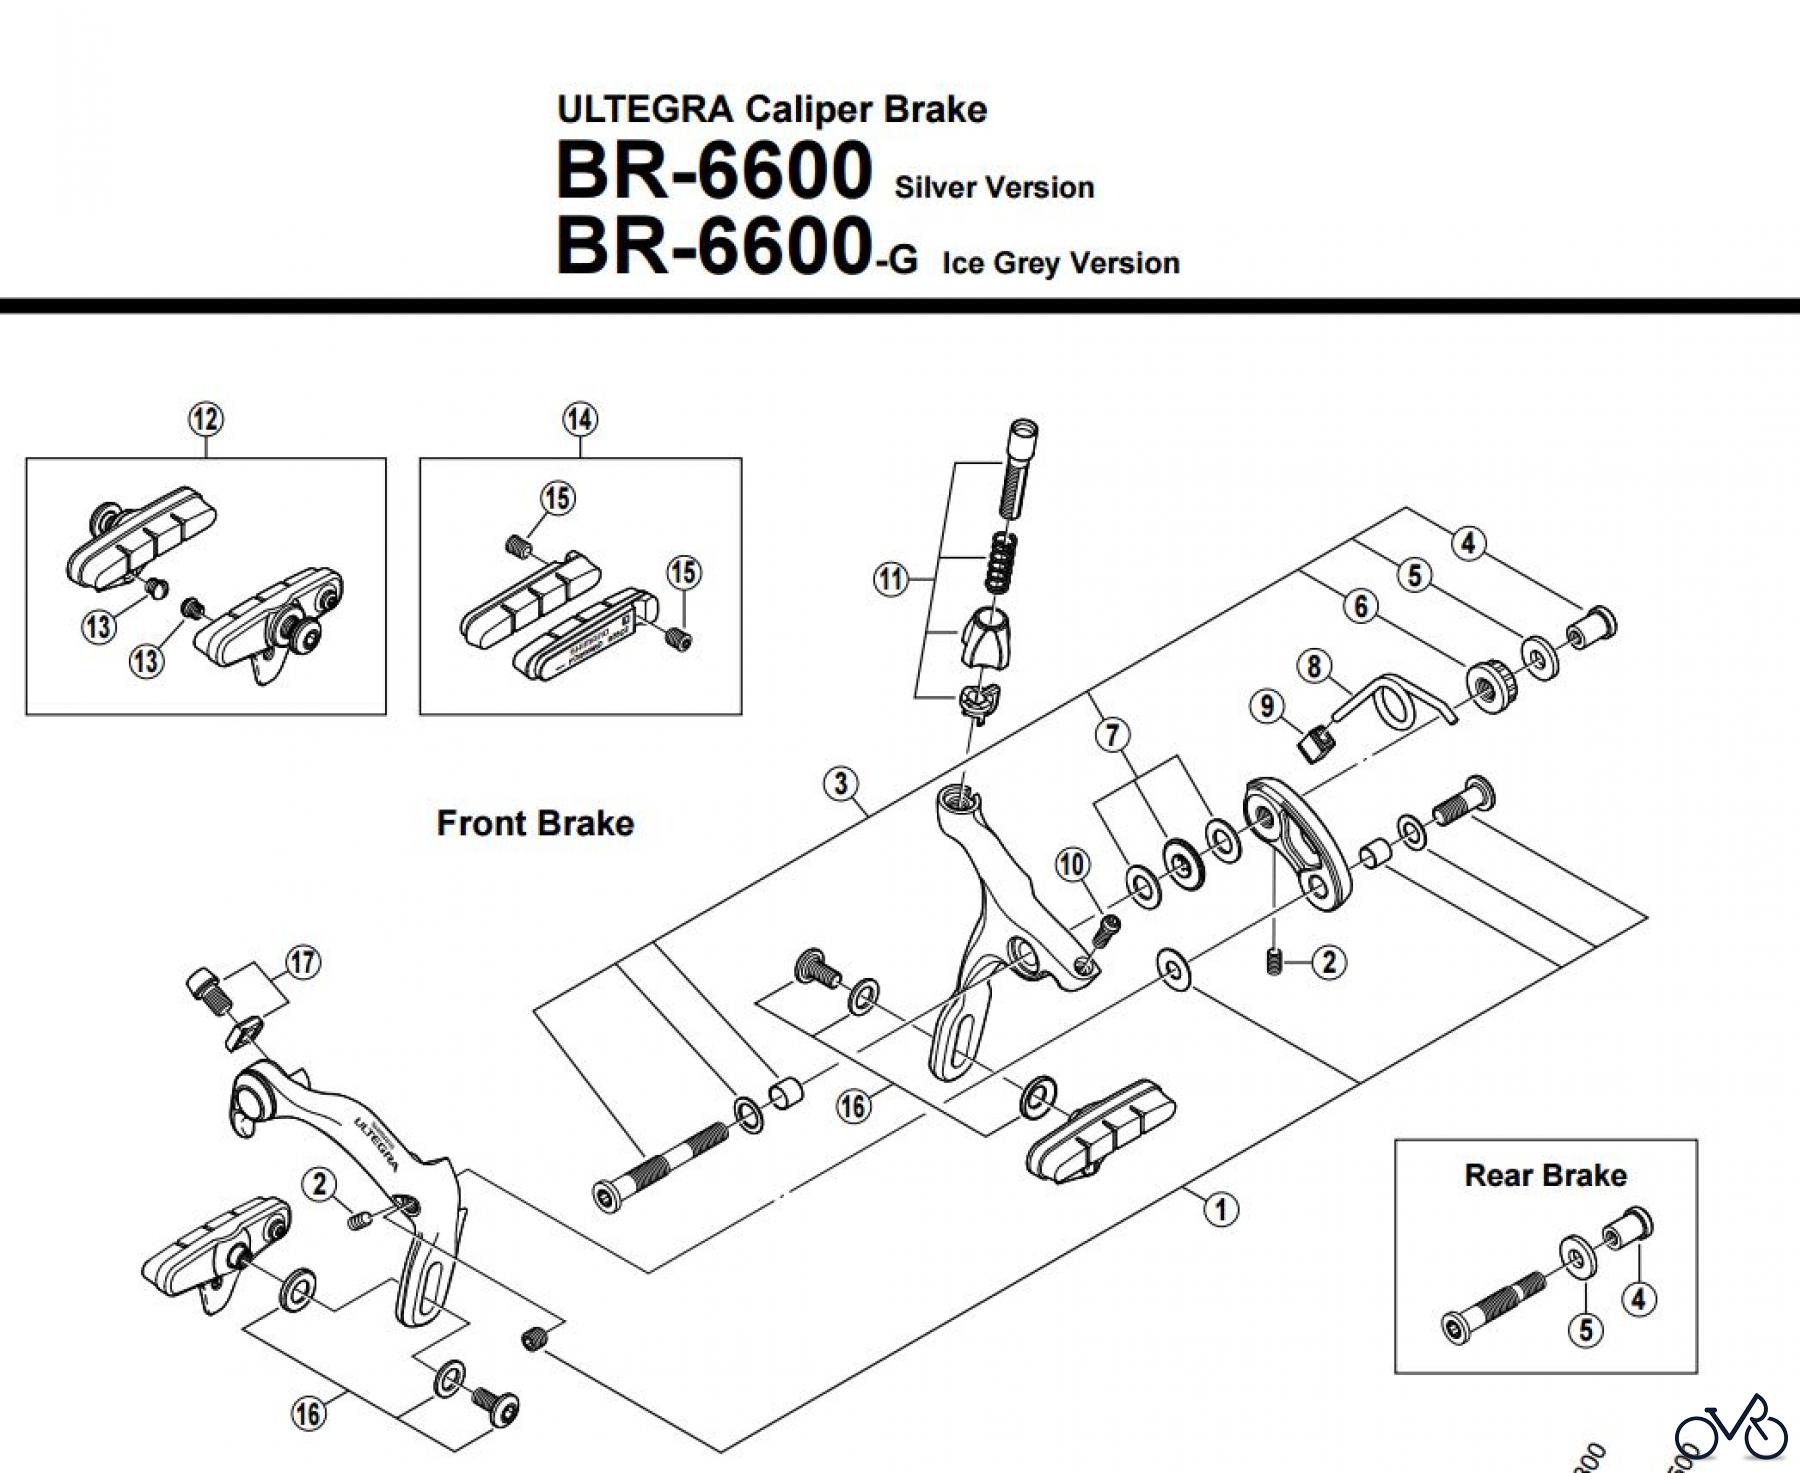  Shimano BR Brake - Bremse BR-6600 ULTEGRA Caliper Brak